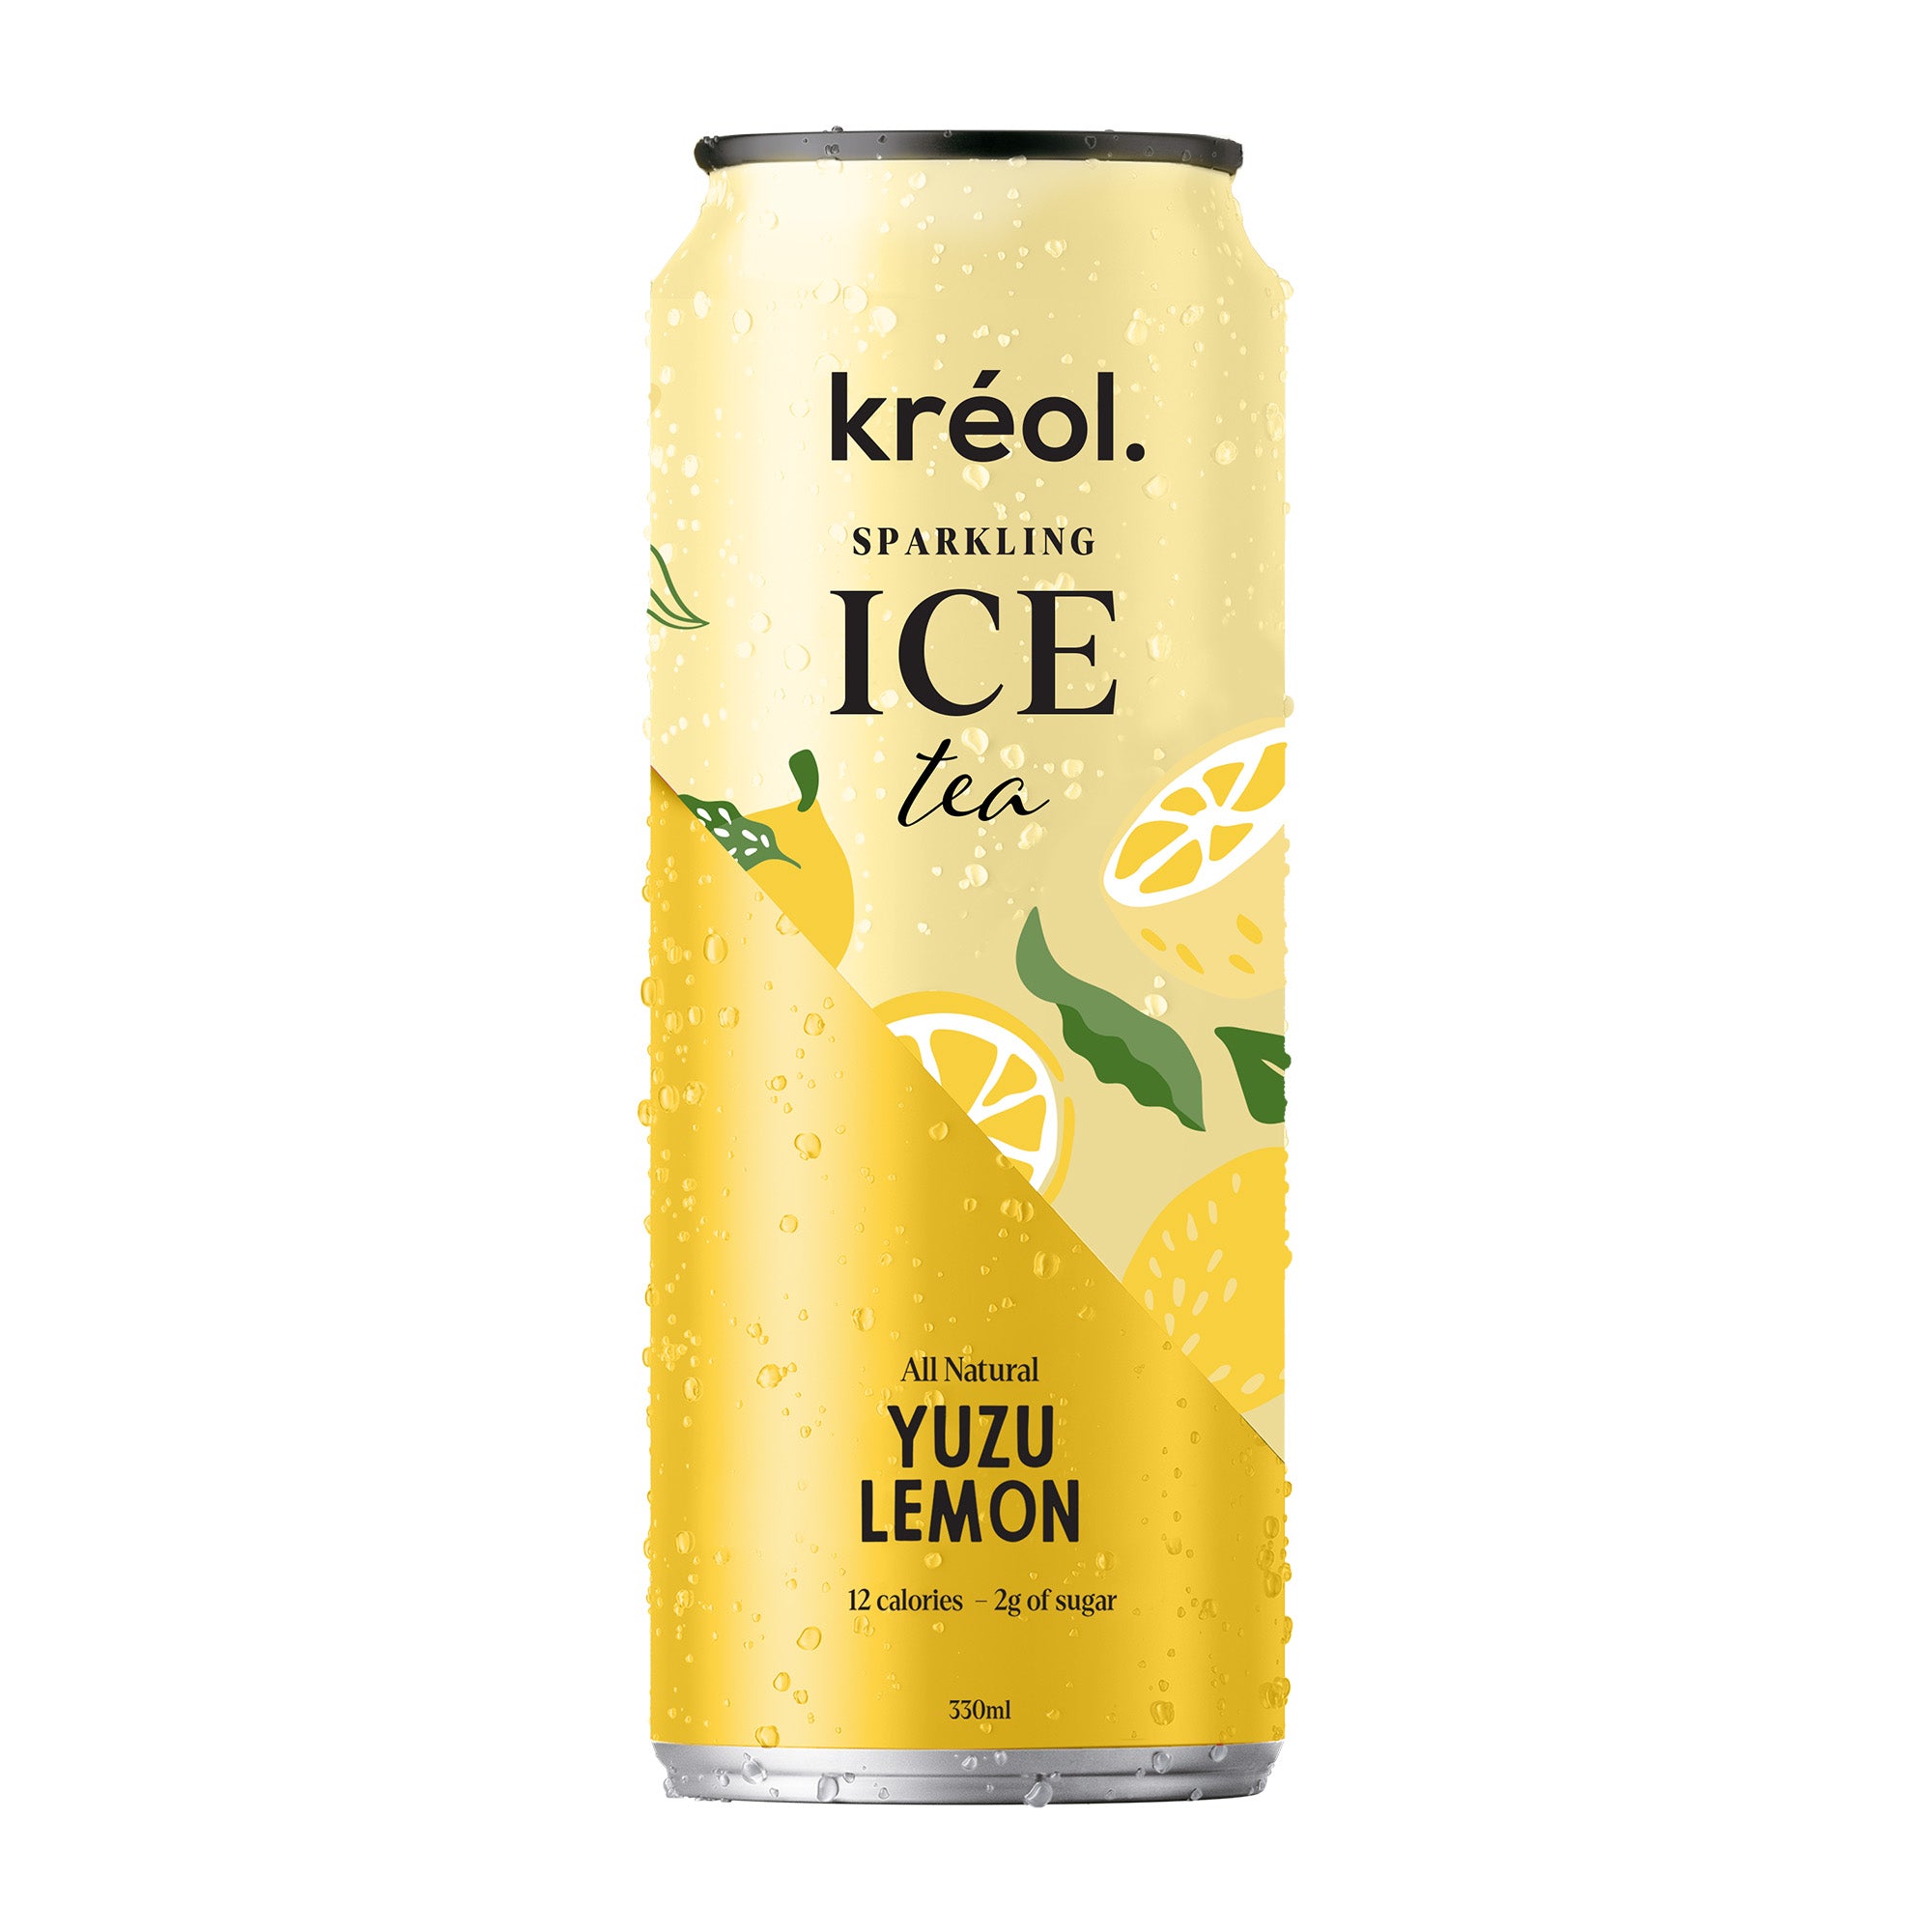 Yuzu Lemon Ice Tea